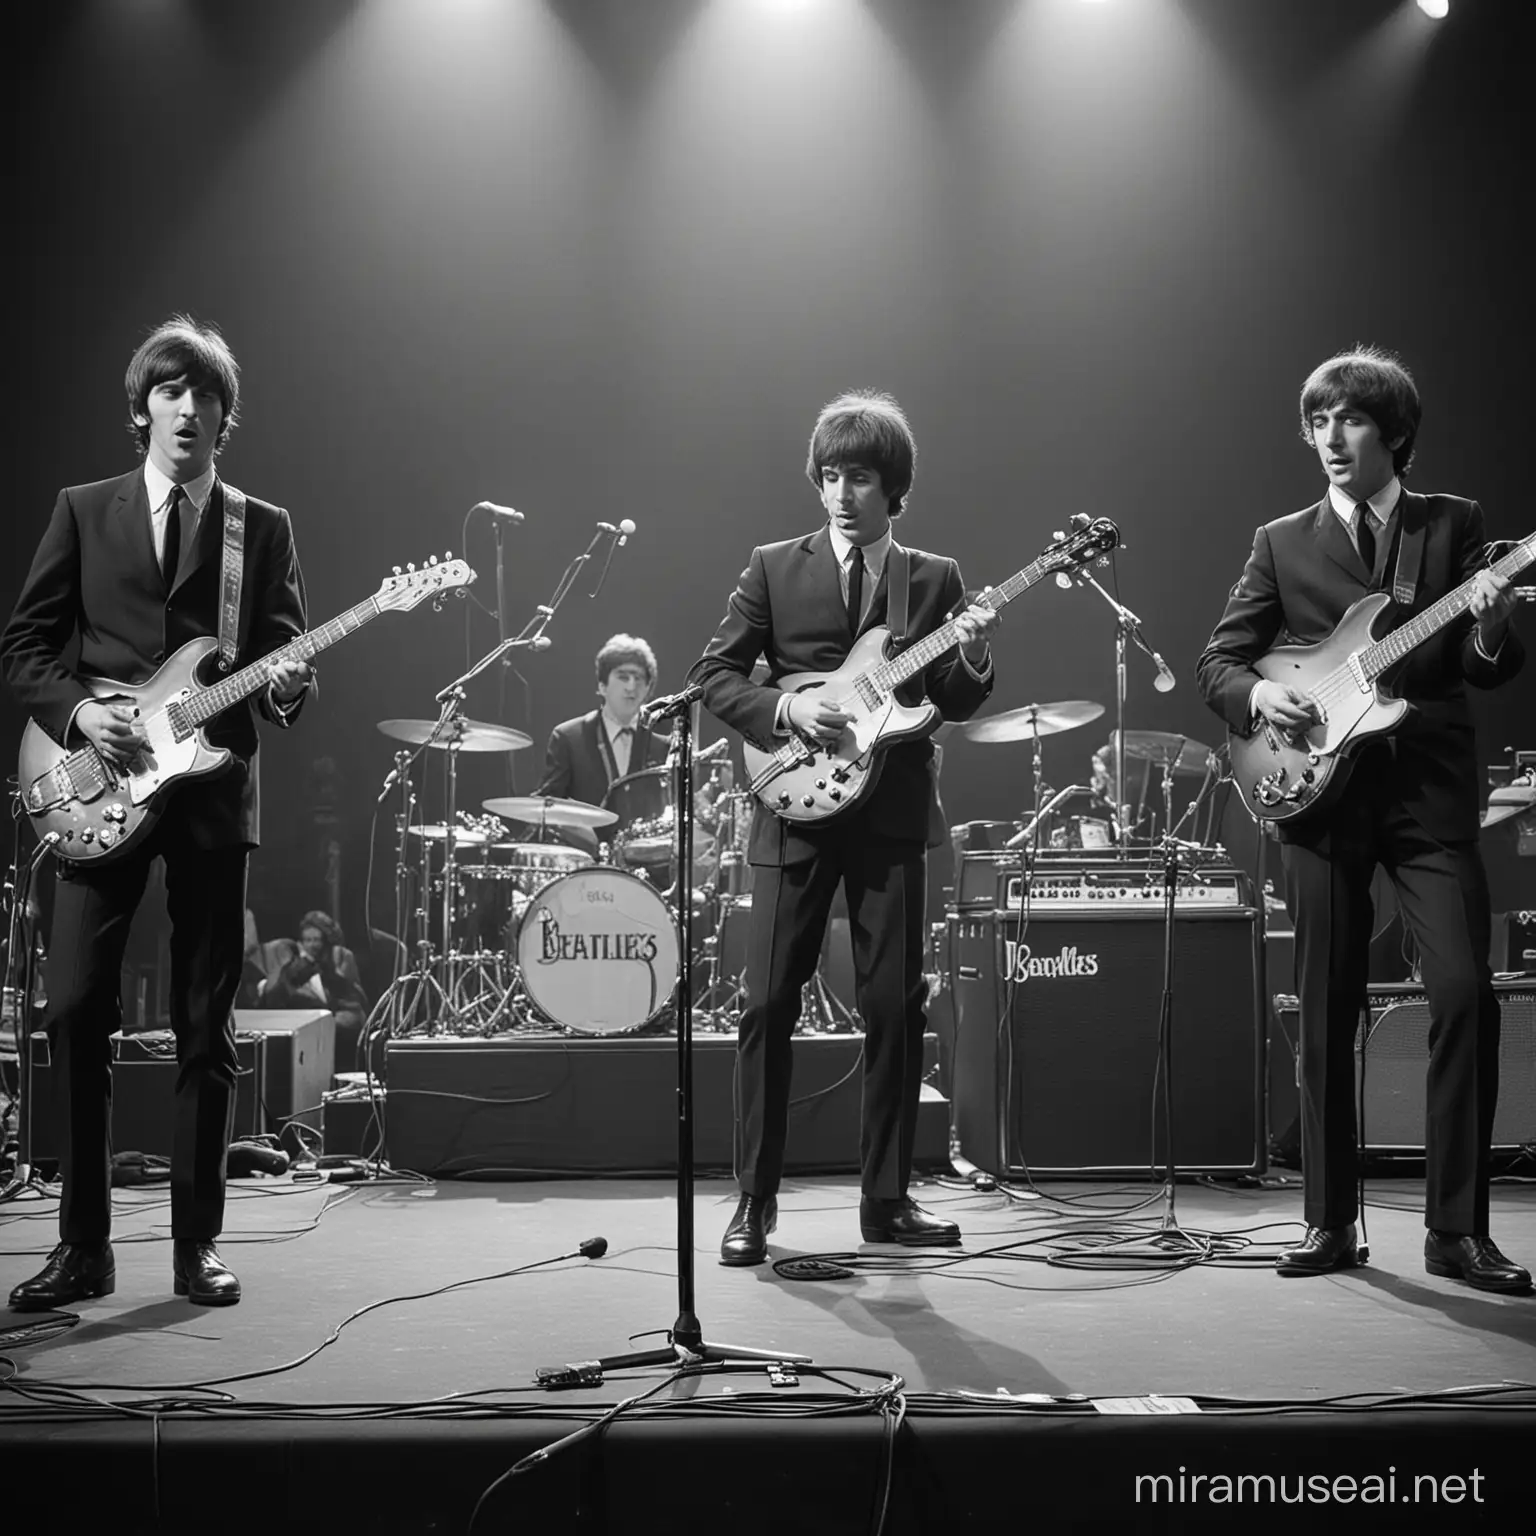 Band in einer Besetzung wie die Beatles (mit Gitarre, Bass, Mikrofonen und Gitarrenverstärkern) auf einer kleinen Bühne, als Retro-Schwarzweiß-Foto. Der Blickwinkel soll von unten auf die Bühne gehen.   
 